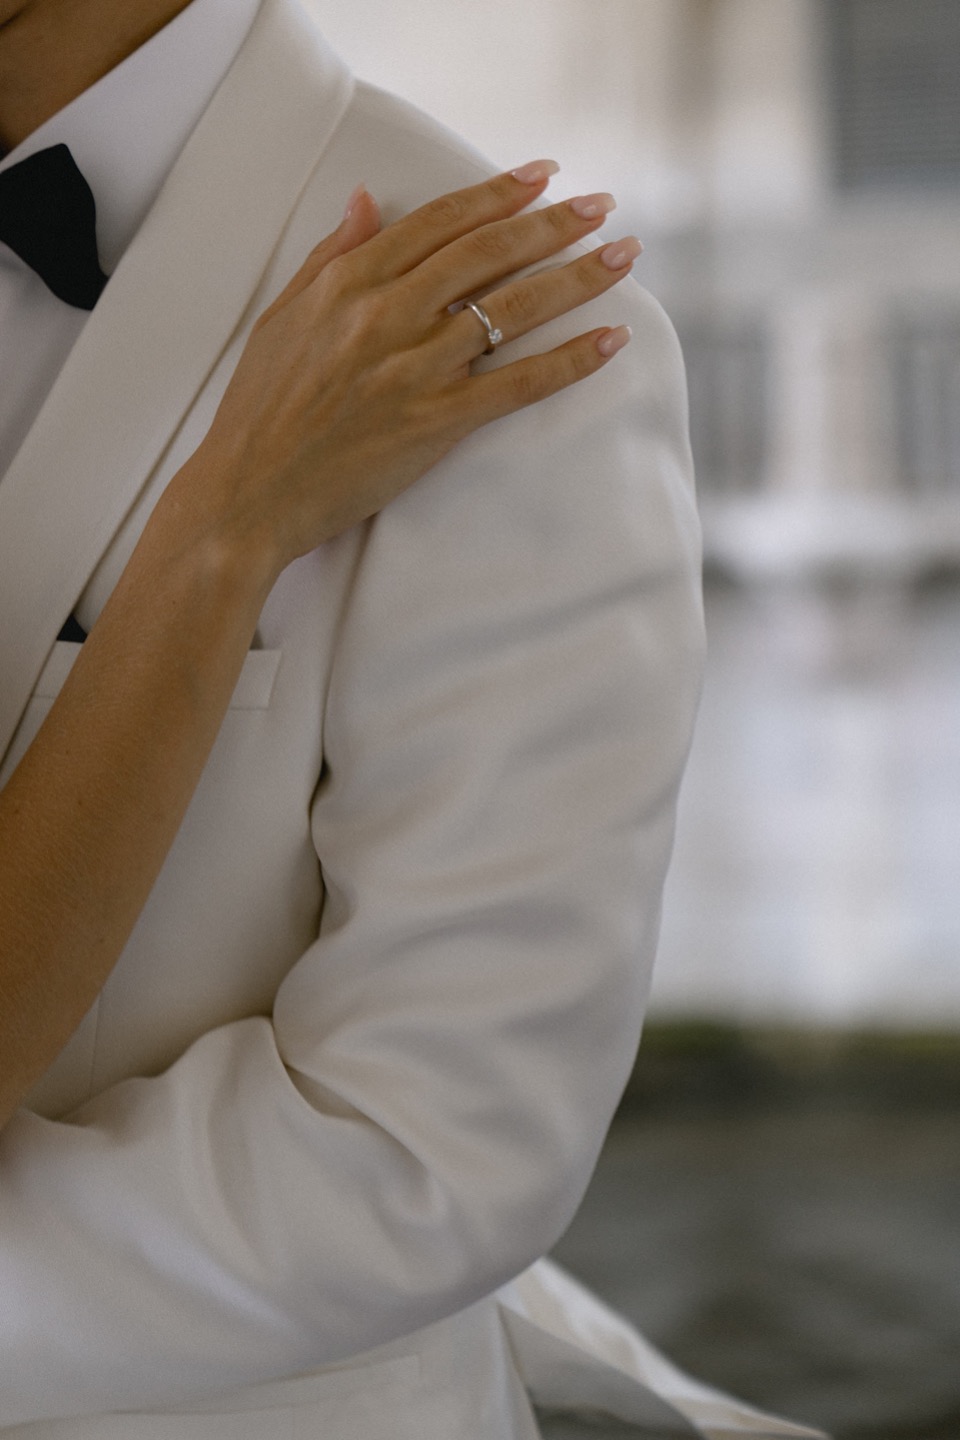 Камерная элегантность: свадьба, вдохновленная Dior